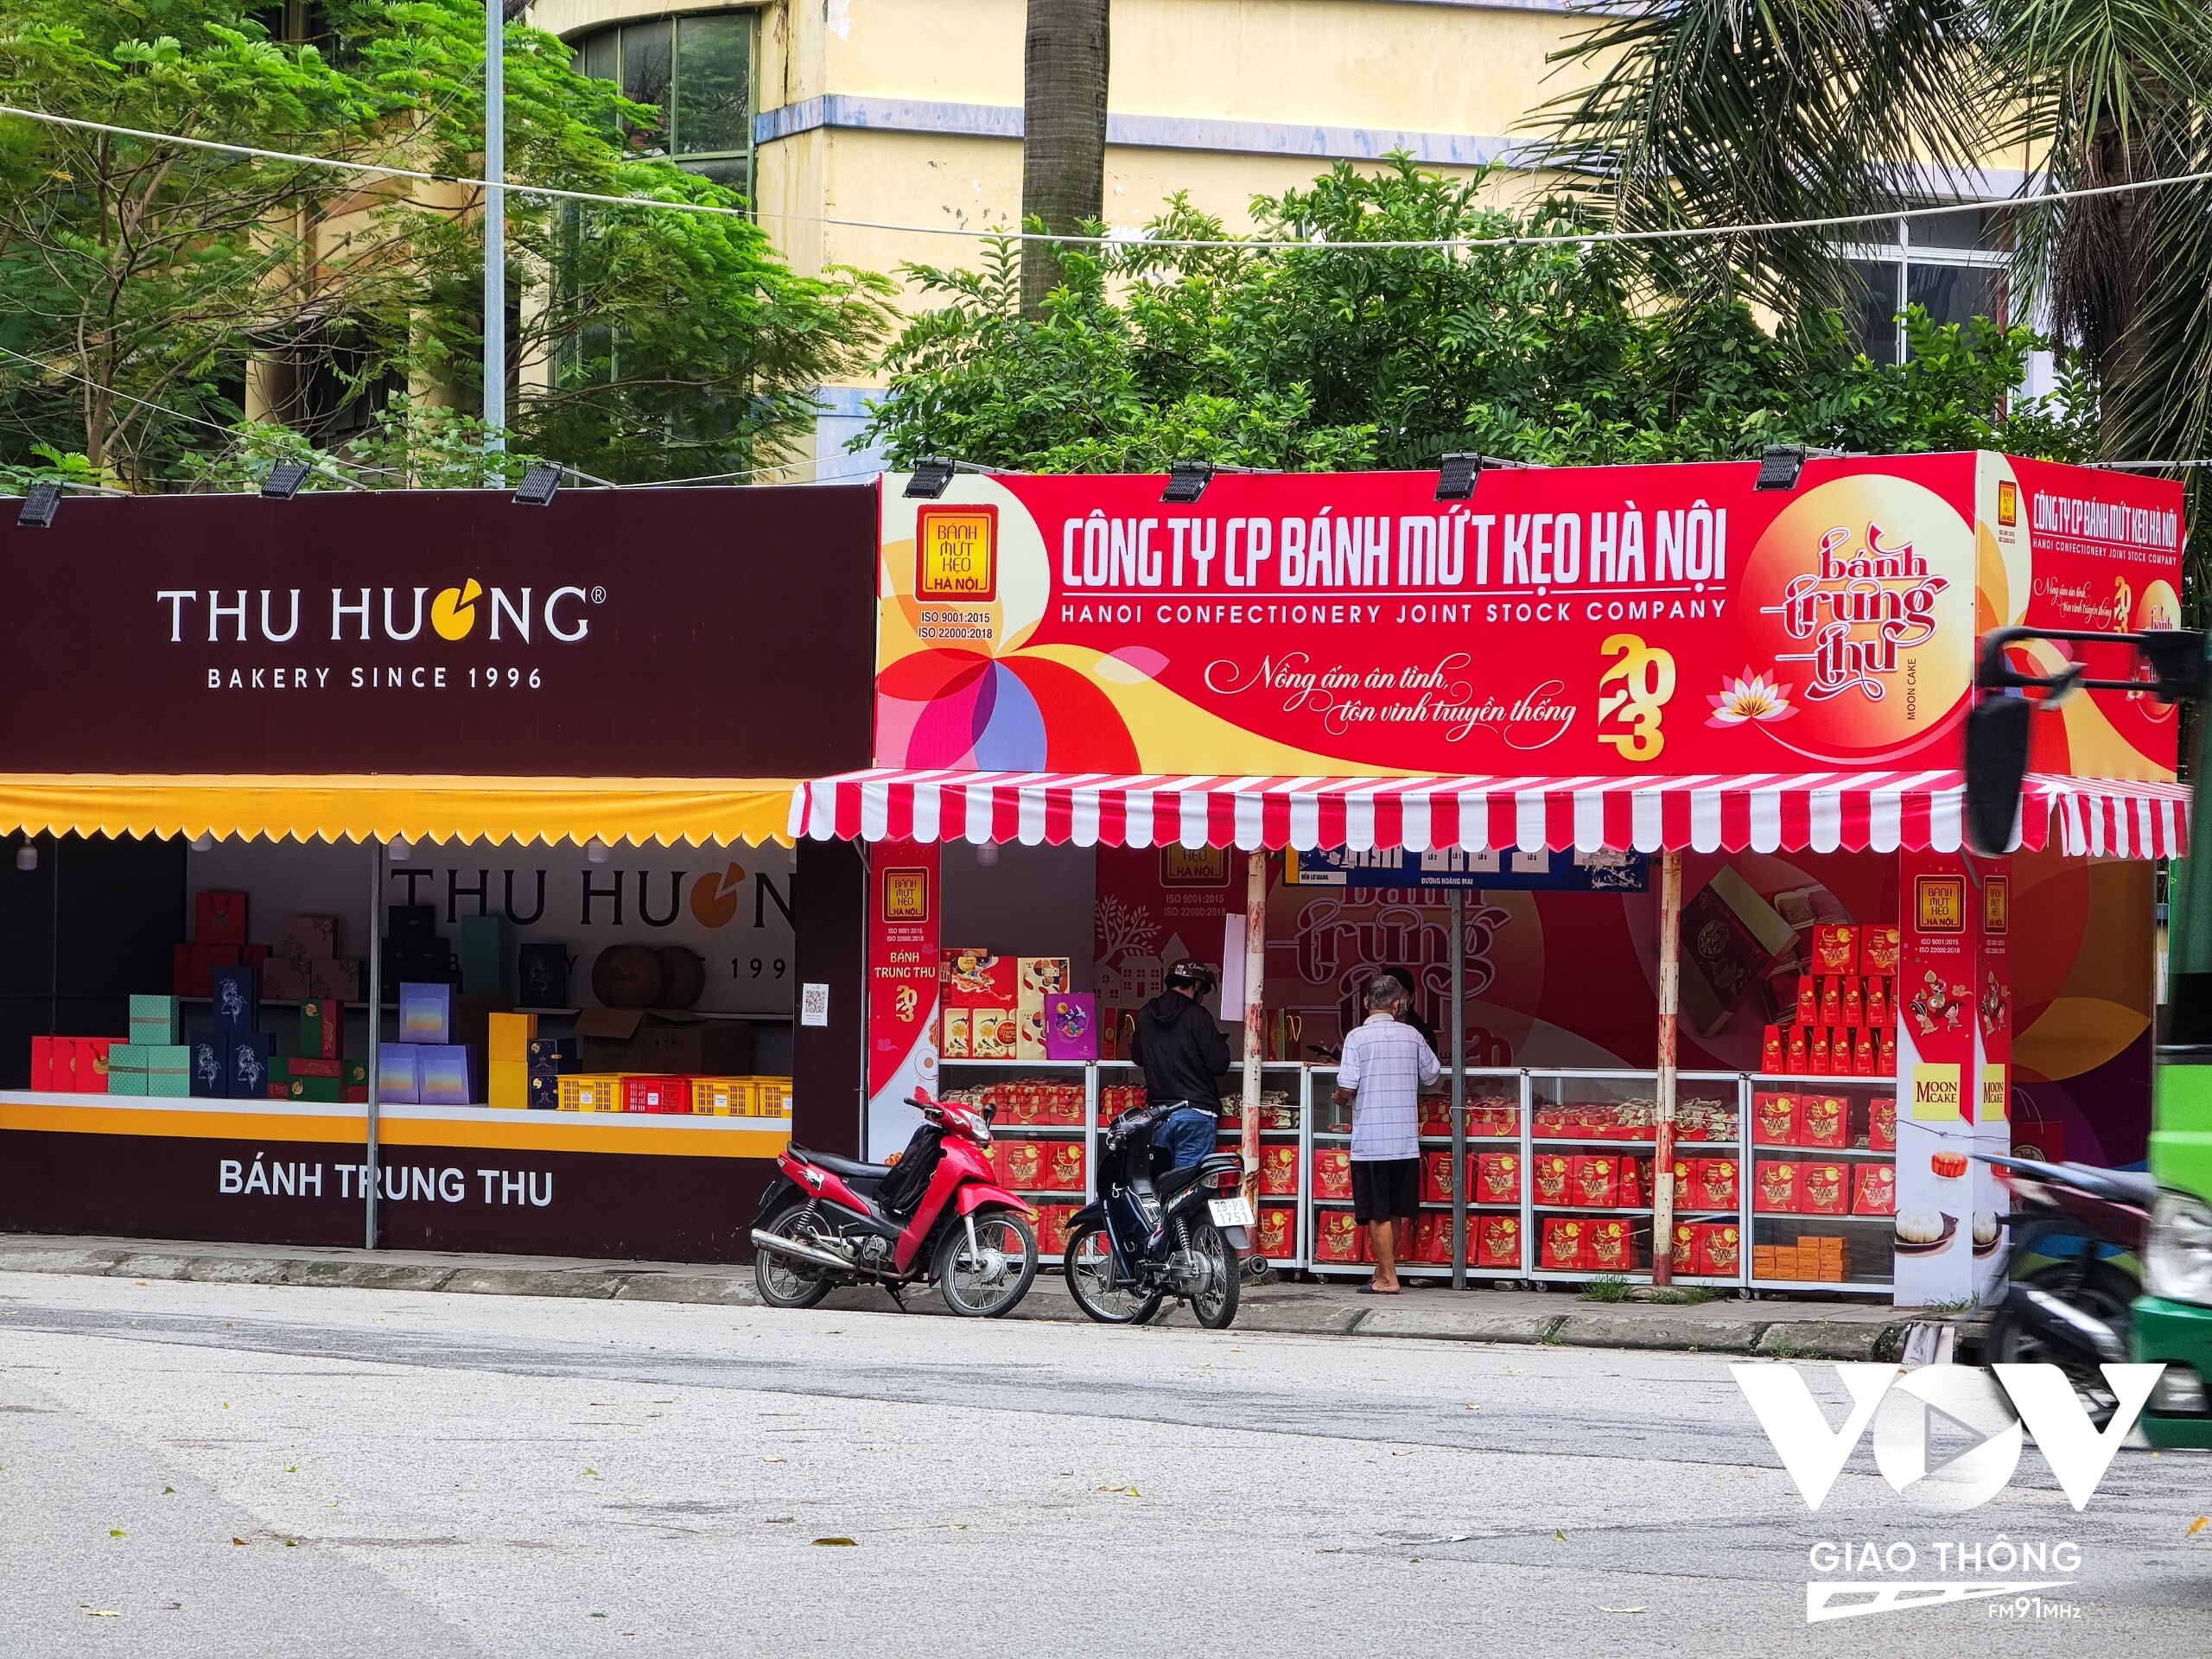 Thị trường bánh Trung thu năm nay bắt đầu sôi động khi nhiều gian hàng bán bánh Trung Thu của các thương hiệu có tiếng như Kinh đô, Bibica… có mặt trên nhiều con đường tuyến phố.